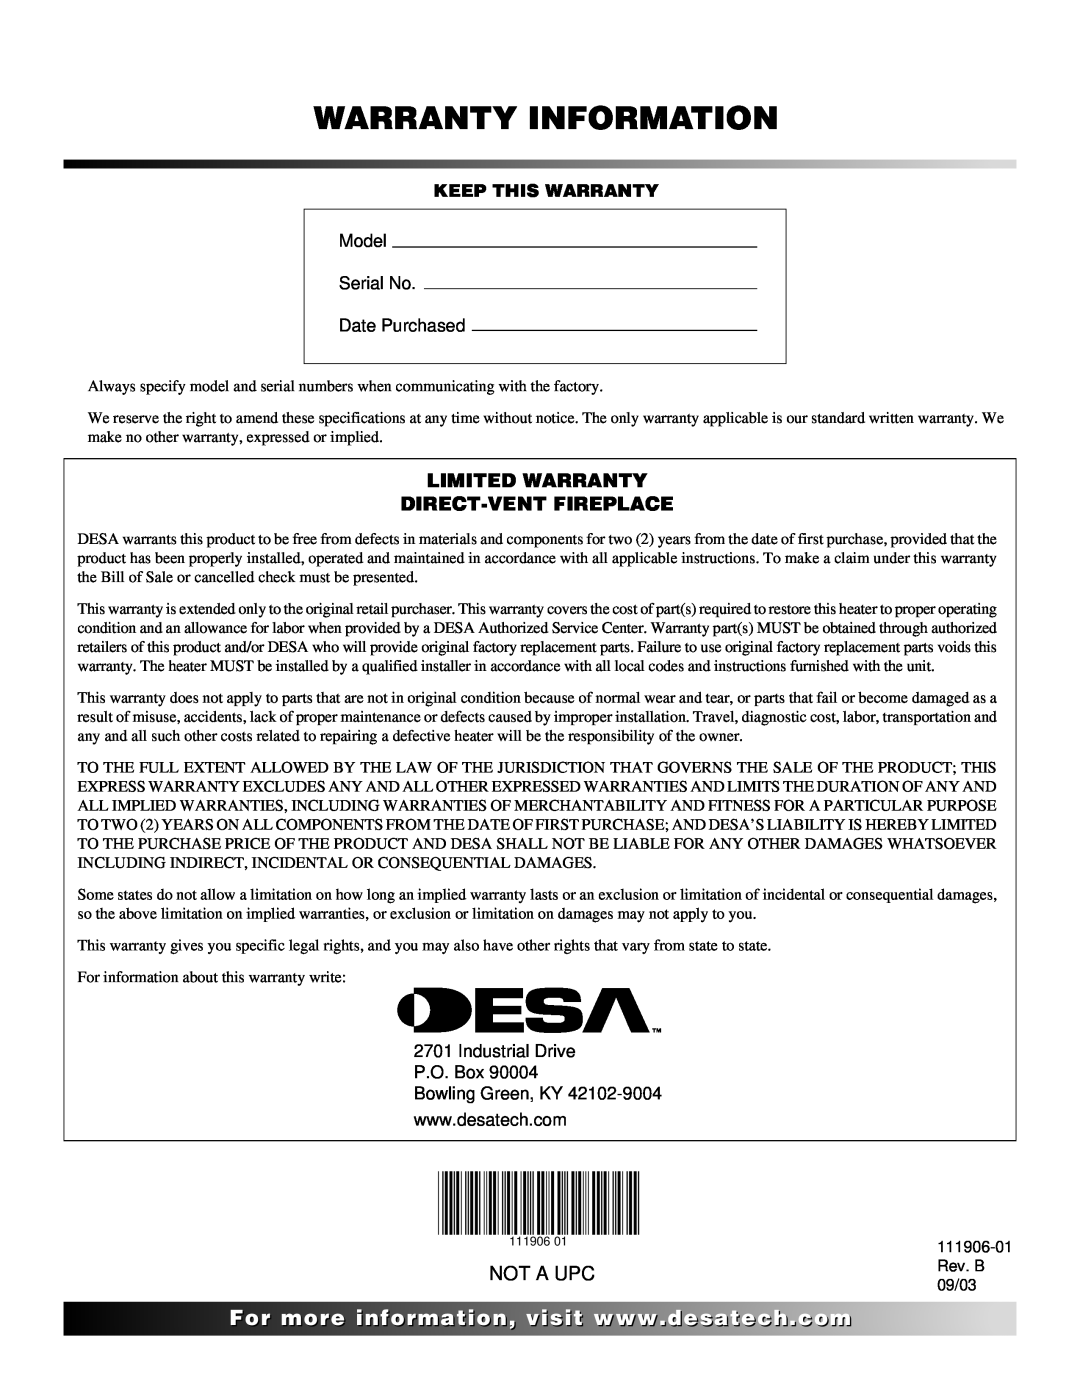 Desa (V)V42PA(1), CHDV42NRA installation manual Warranty Information, Limited Warranty Direct-Ventfireplace, Not A Upc 